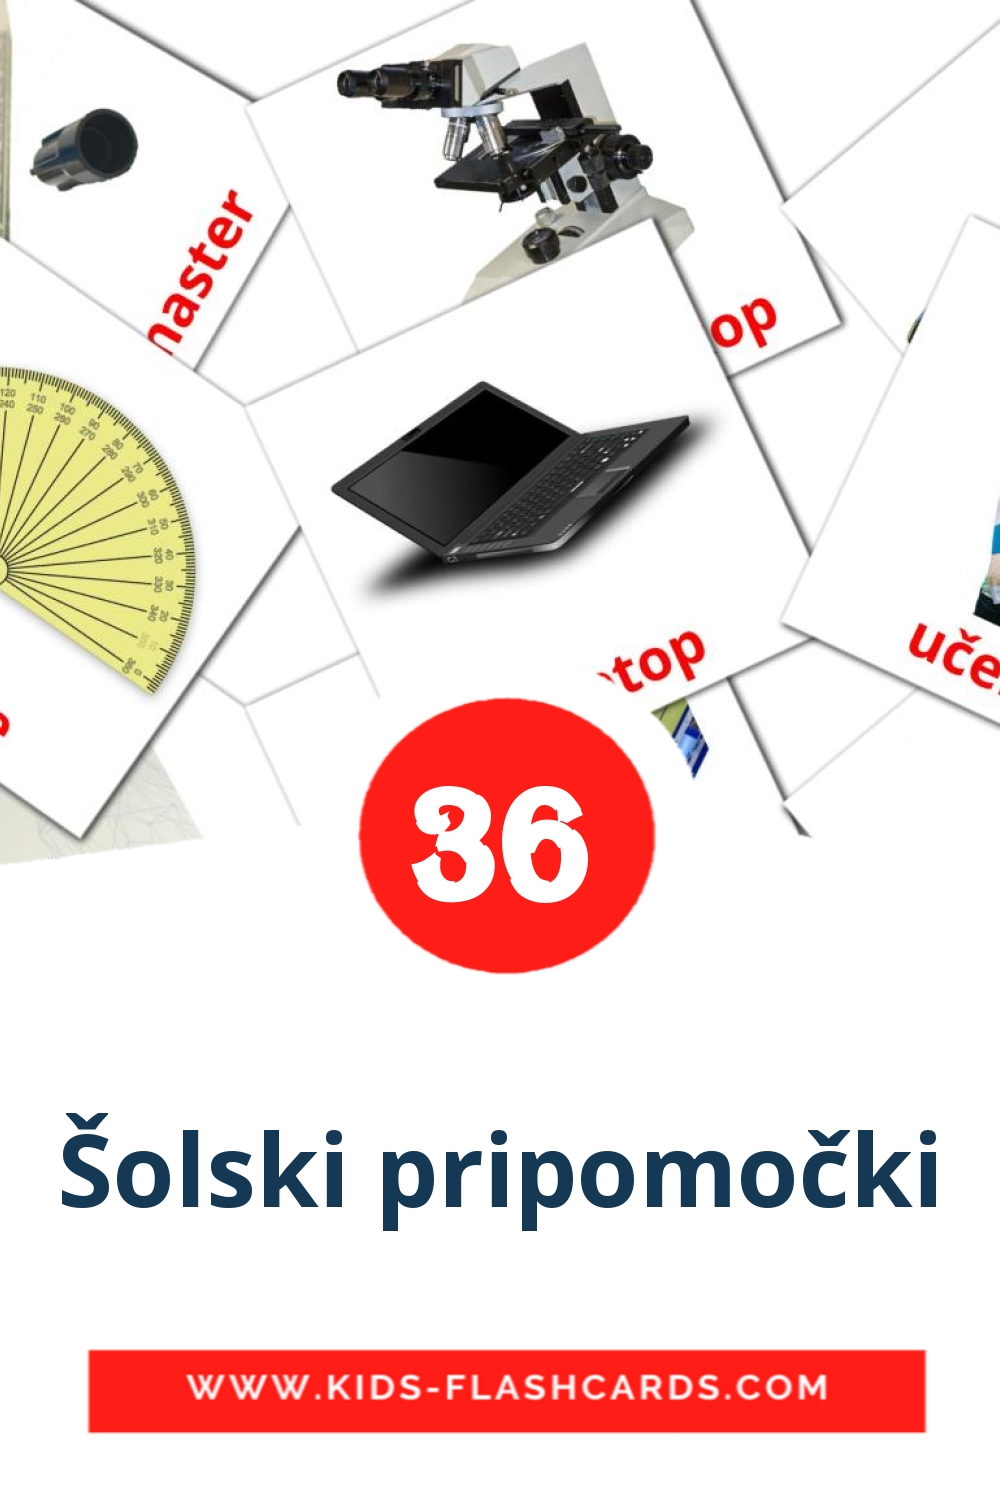 36 Šolski pripomočki fotokaarten voor kleuters in het servisch